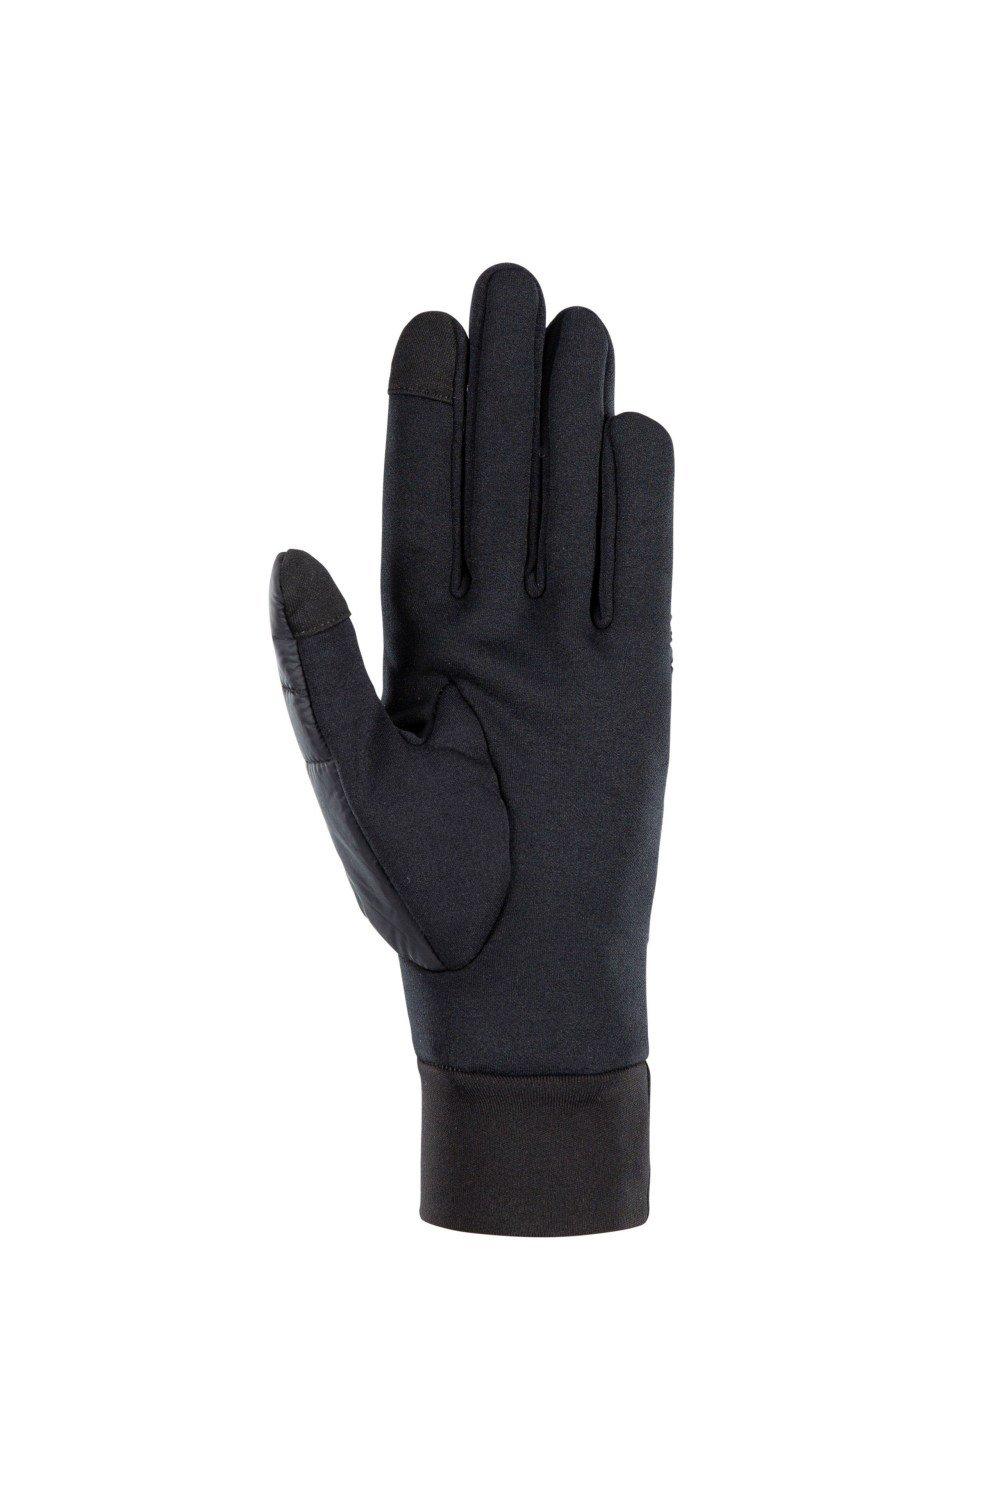 Кожаная перчатка Румер Trespass, черный